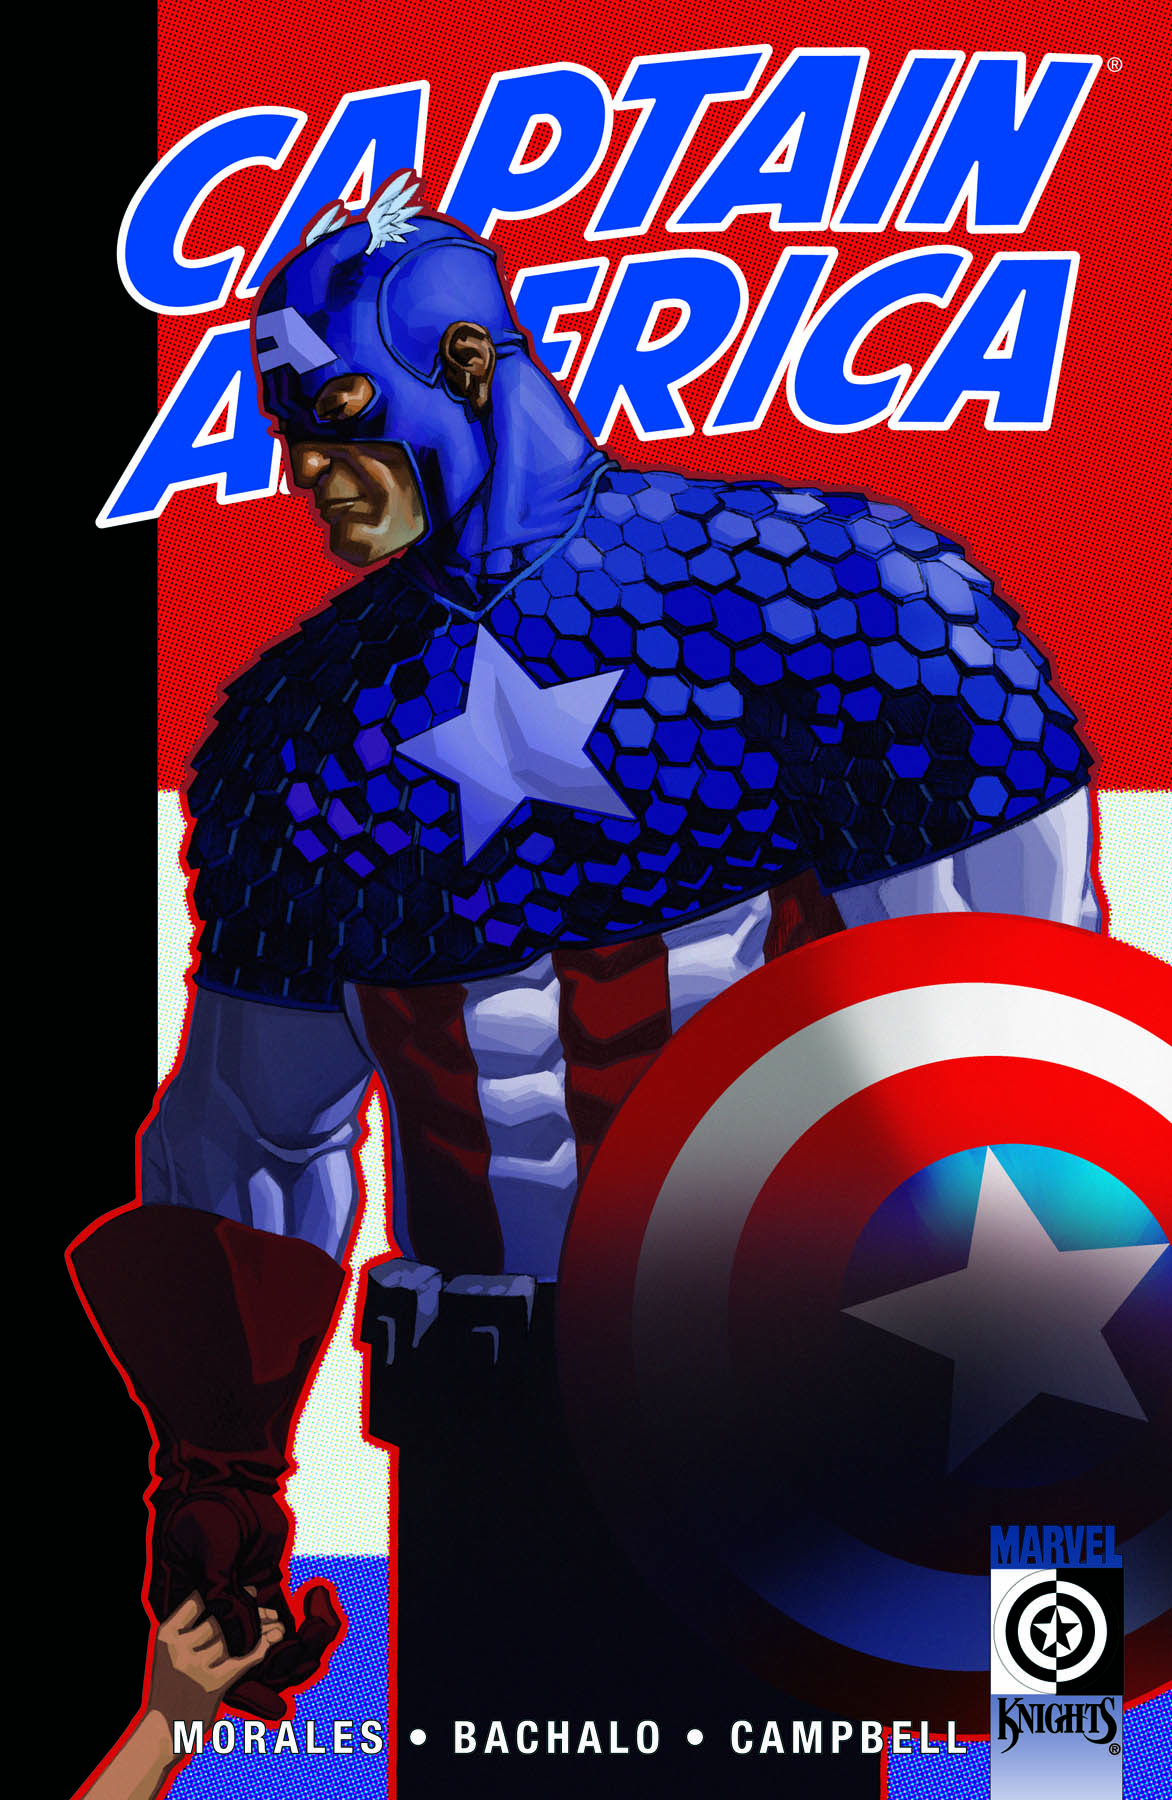 Captain America (2002) #21